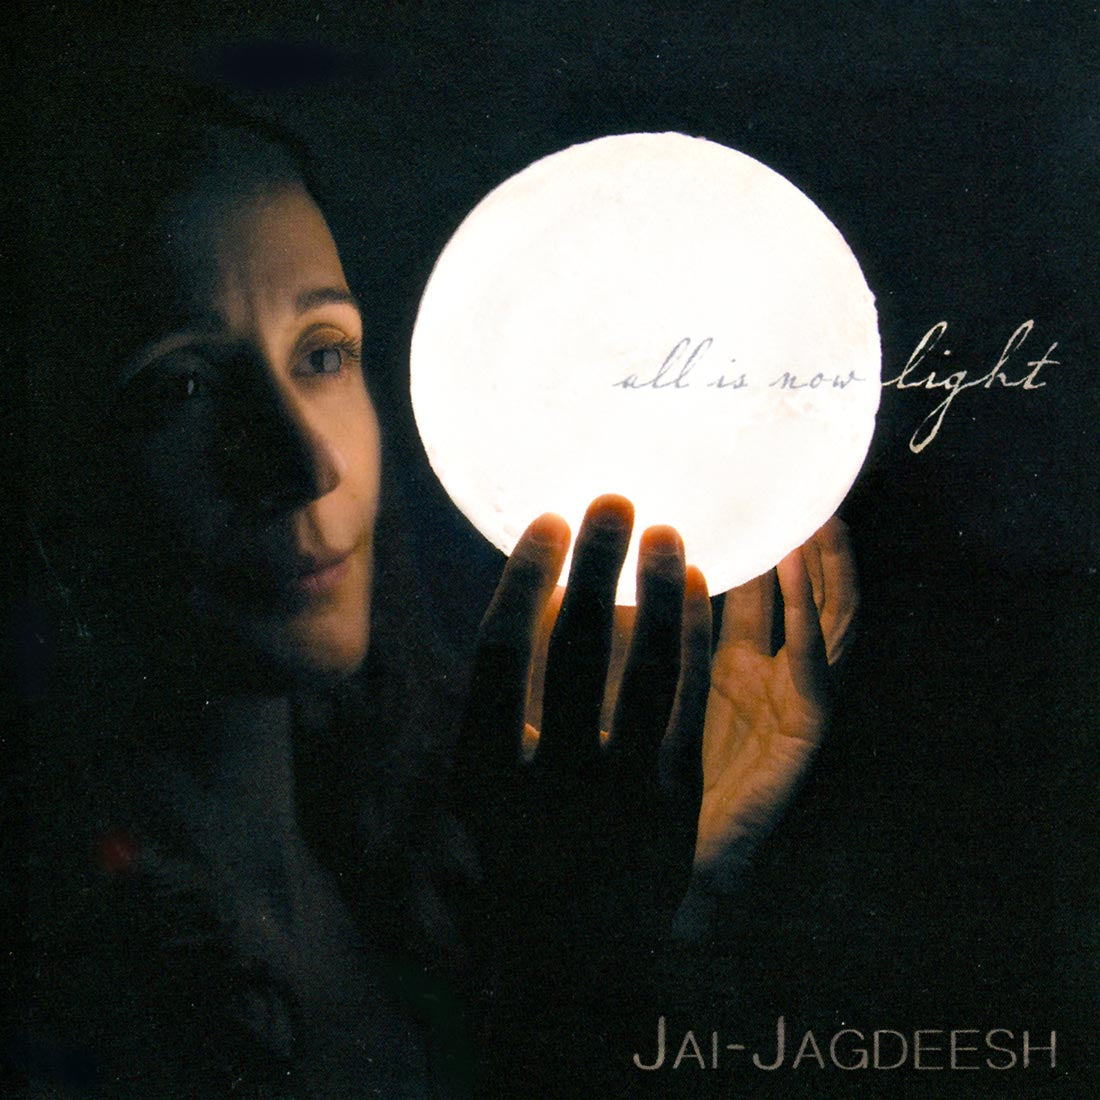 All Is Now Light (Sadhana) - Jai-Jagdeesh komplett